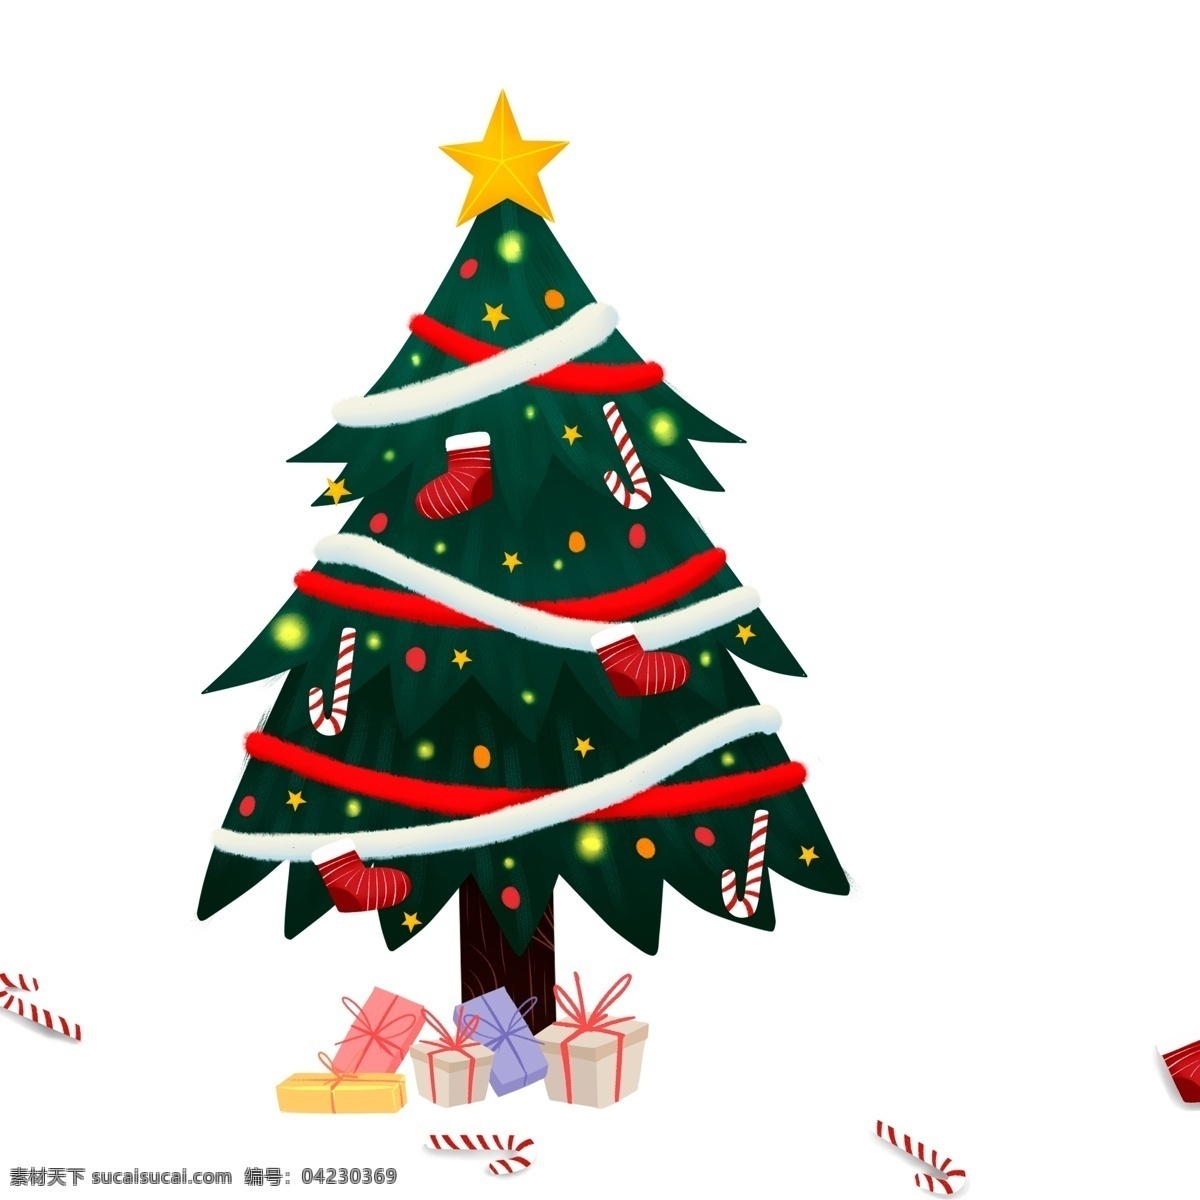 卡通 小 清新 颗 圣诞树 小清新 插画 圣诞节 礼盒 装饰 树木 植物 传统节日 挂饰 psd设计